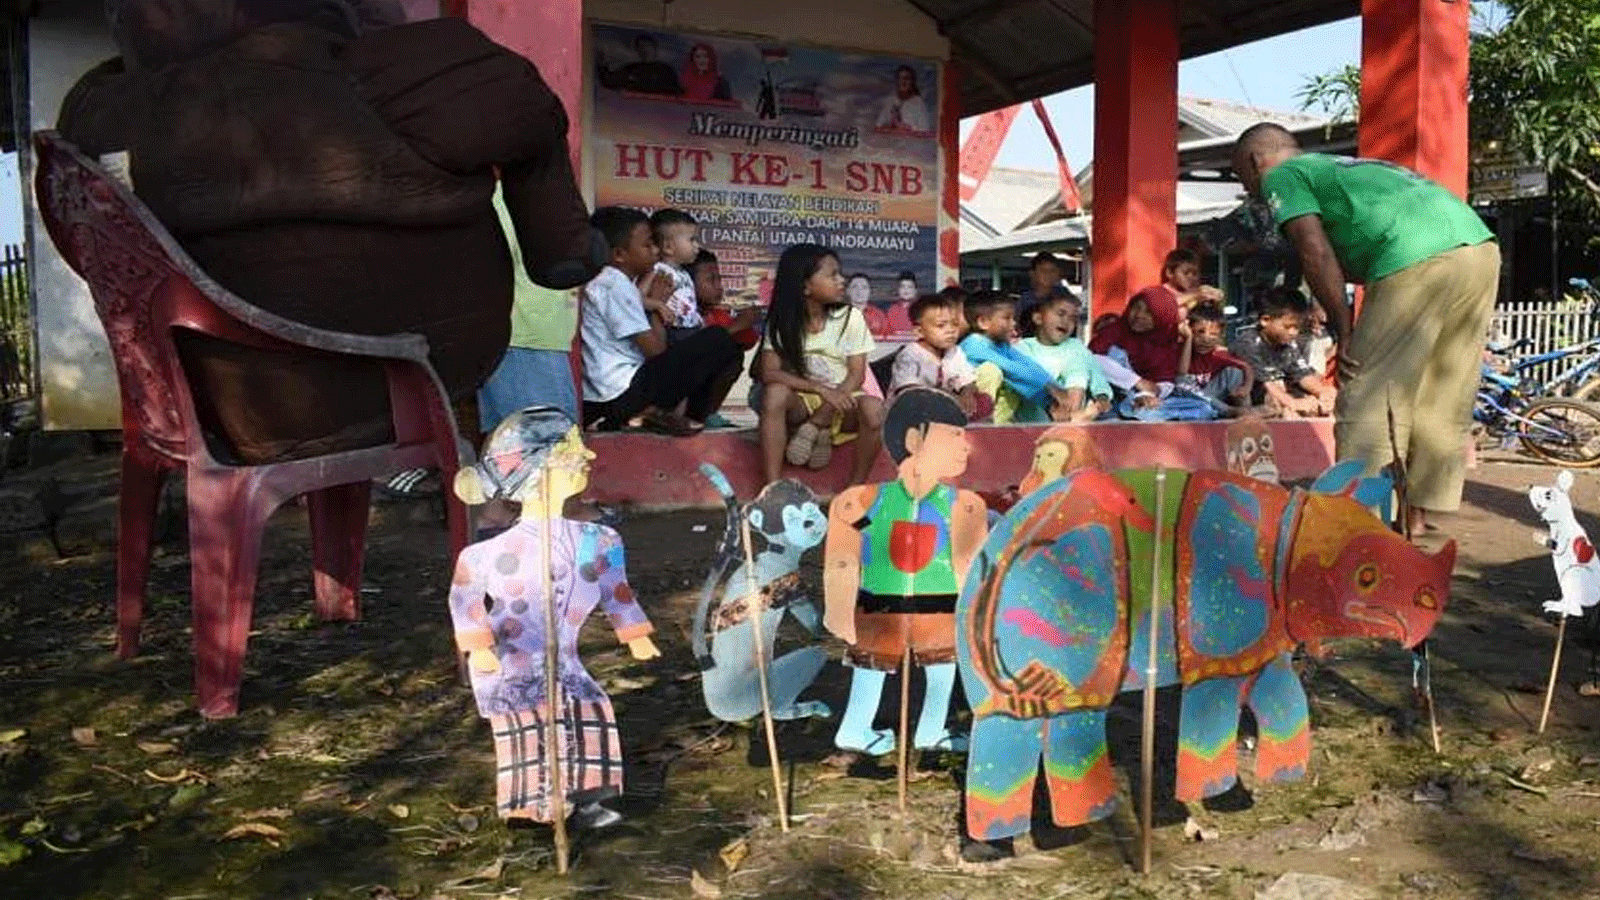 المعلم المتقاعد سامسودين(Samsudin) (إلى اليمين) يعلّم الأطفال كيفية الحفاظ على الحيوانات باستخدام الدمى المصنوعة من الورق المقوى في قرية سيمارا كولون(Cemara Kulon)، في إندرامايو(Indramayu).